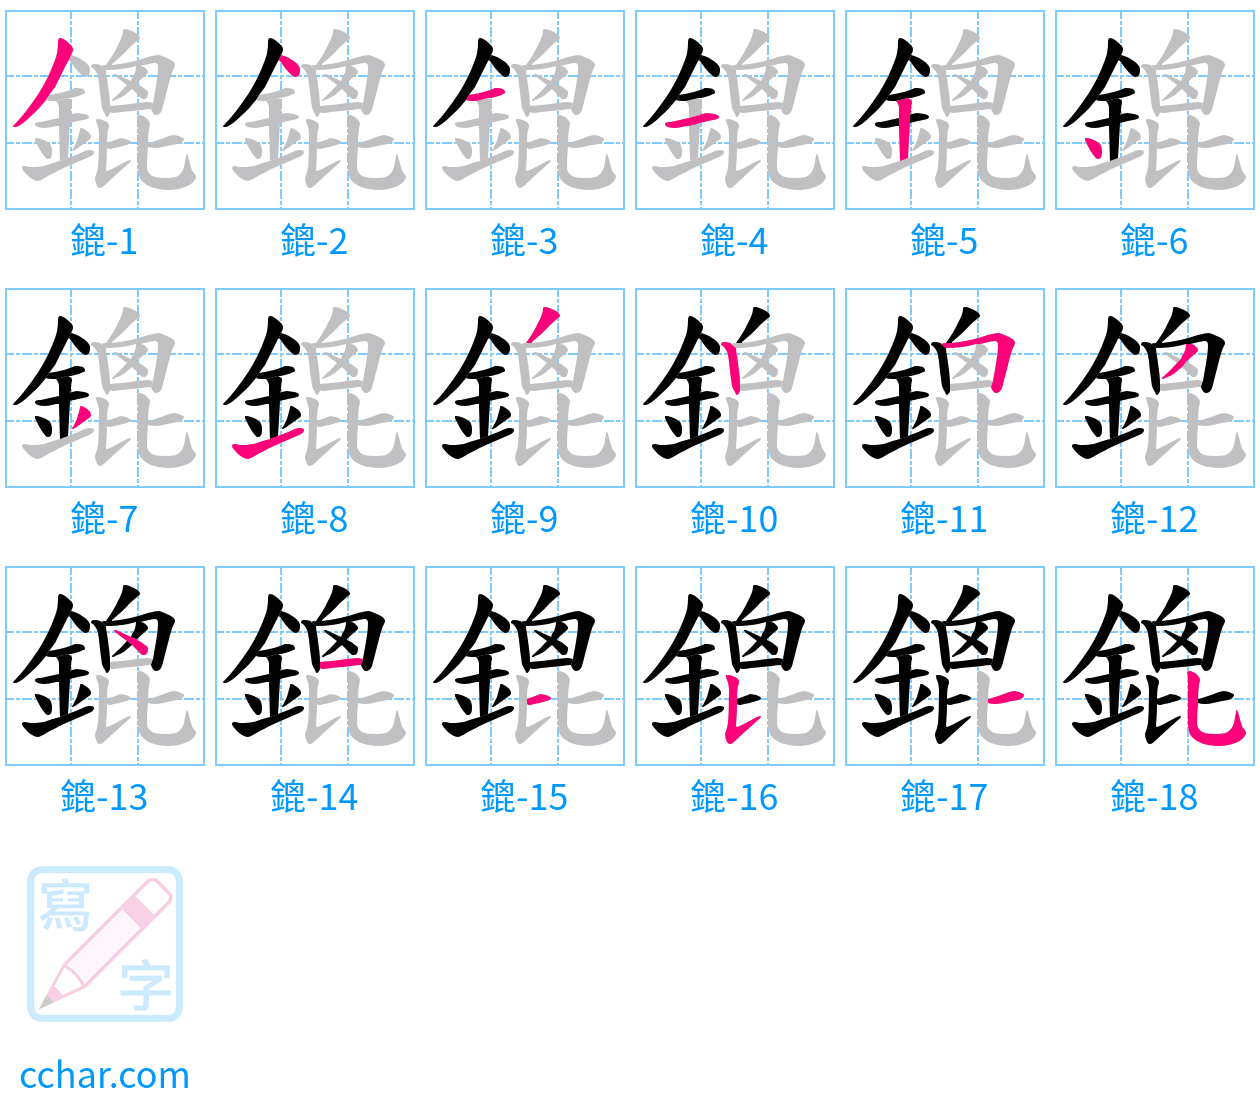 鎞 stroke order step-by-step diagram